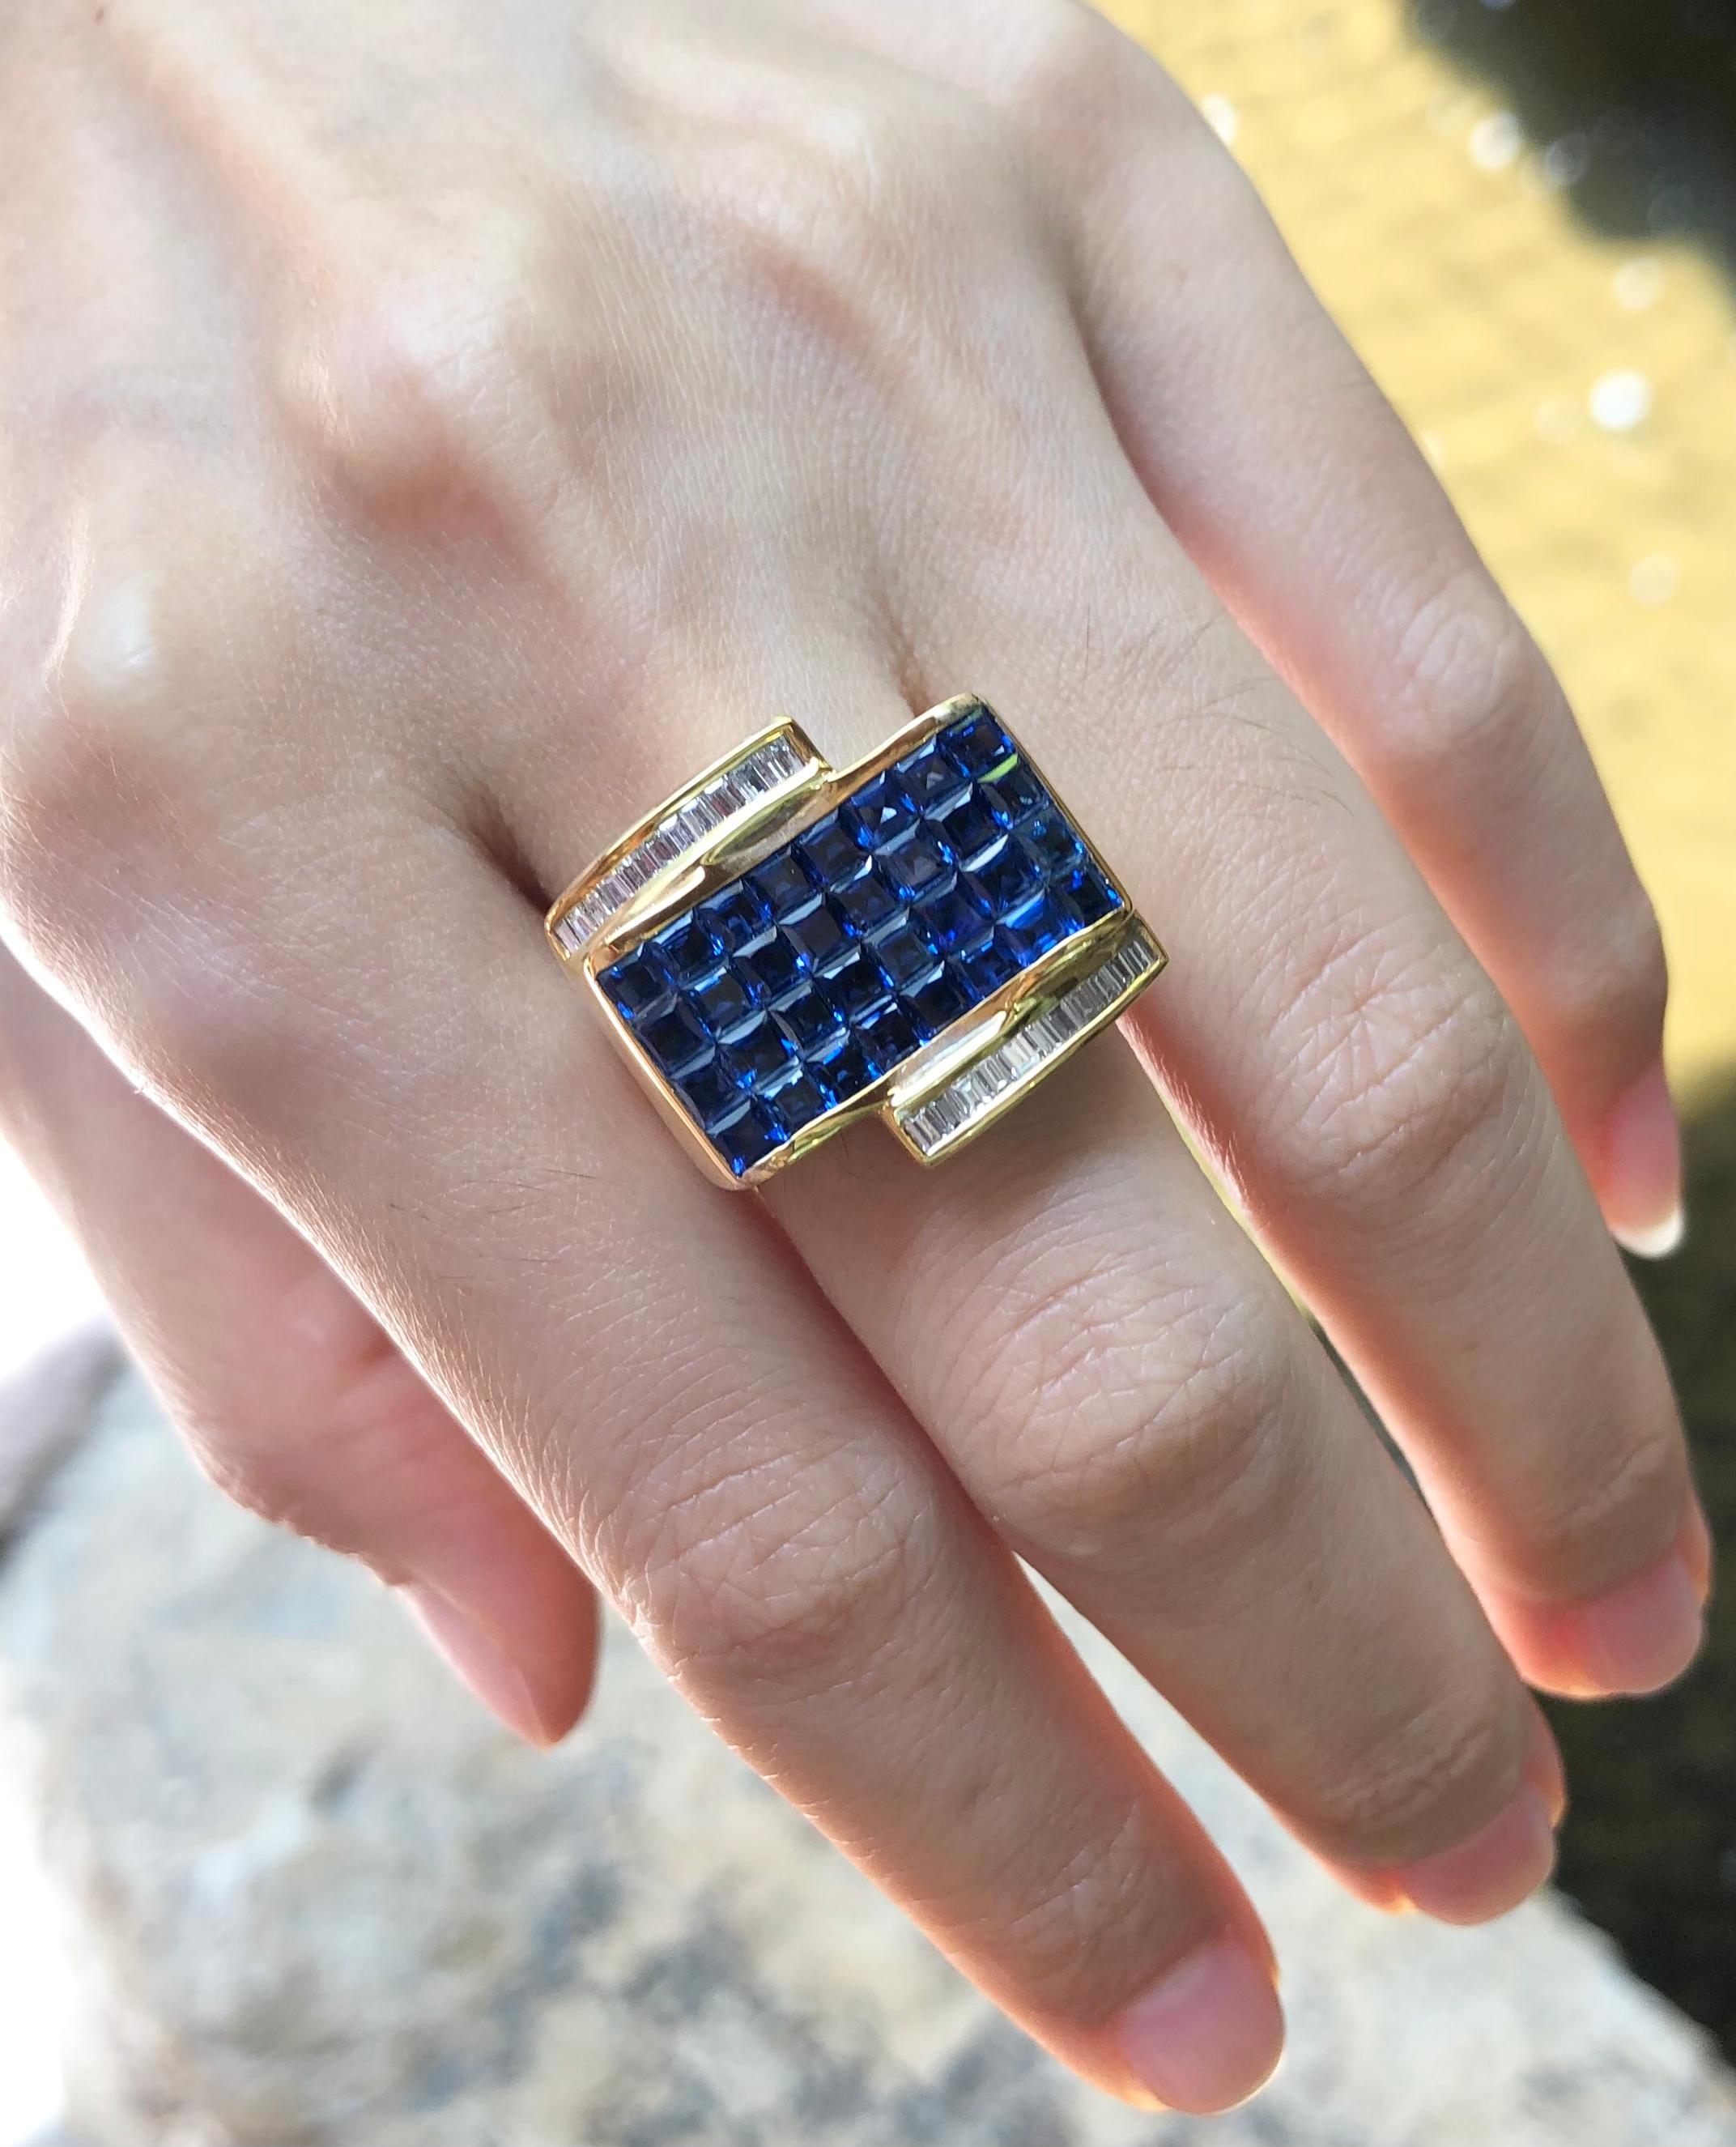 Blauer Saphir 4,71 Karat mit Diamant 0,47 Karat Ring in 18 Karat Goldfassung

Breite:  2.1 cm 
Länge:  1.9 cm
Ringgröße: 53
Gesamtgewicht: 15,38 Gramm

